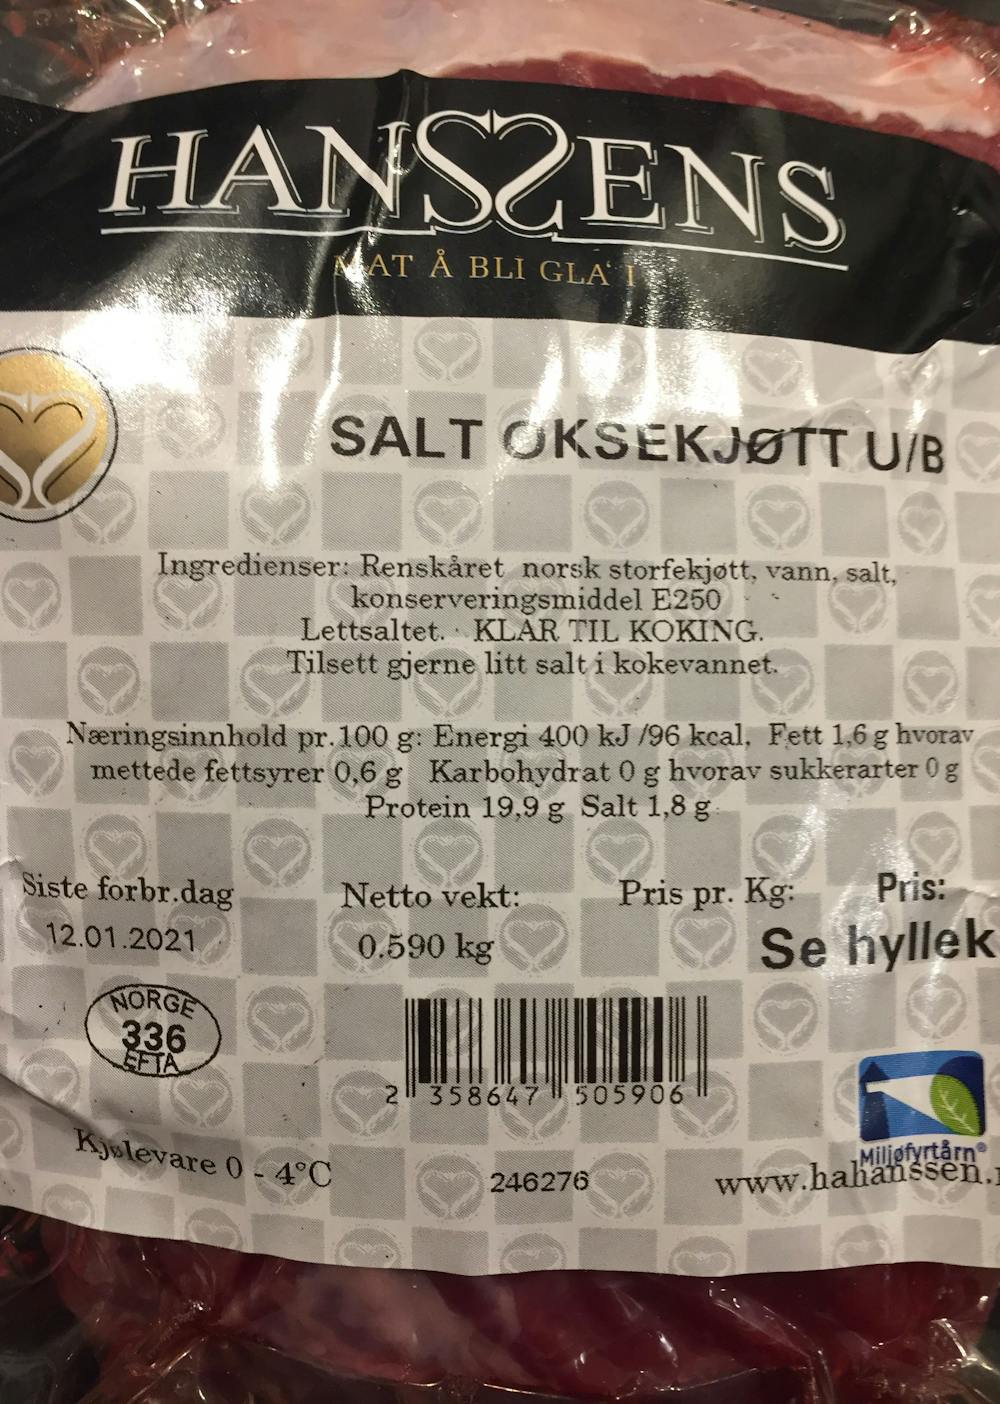 Salt oksekjøtt, Hanssens